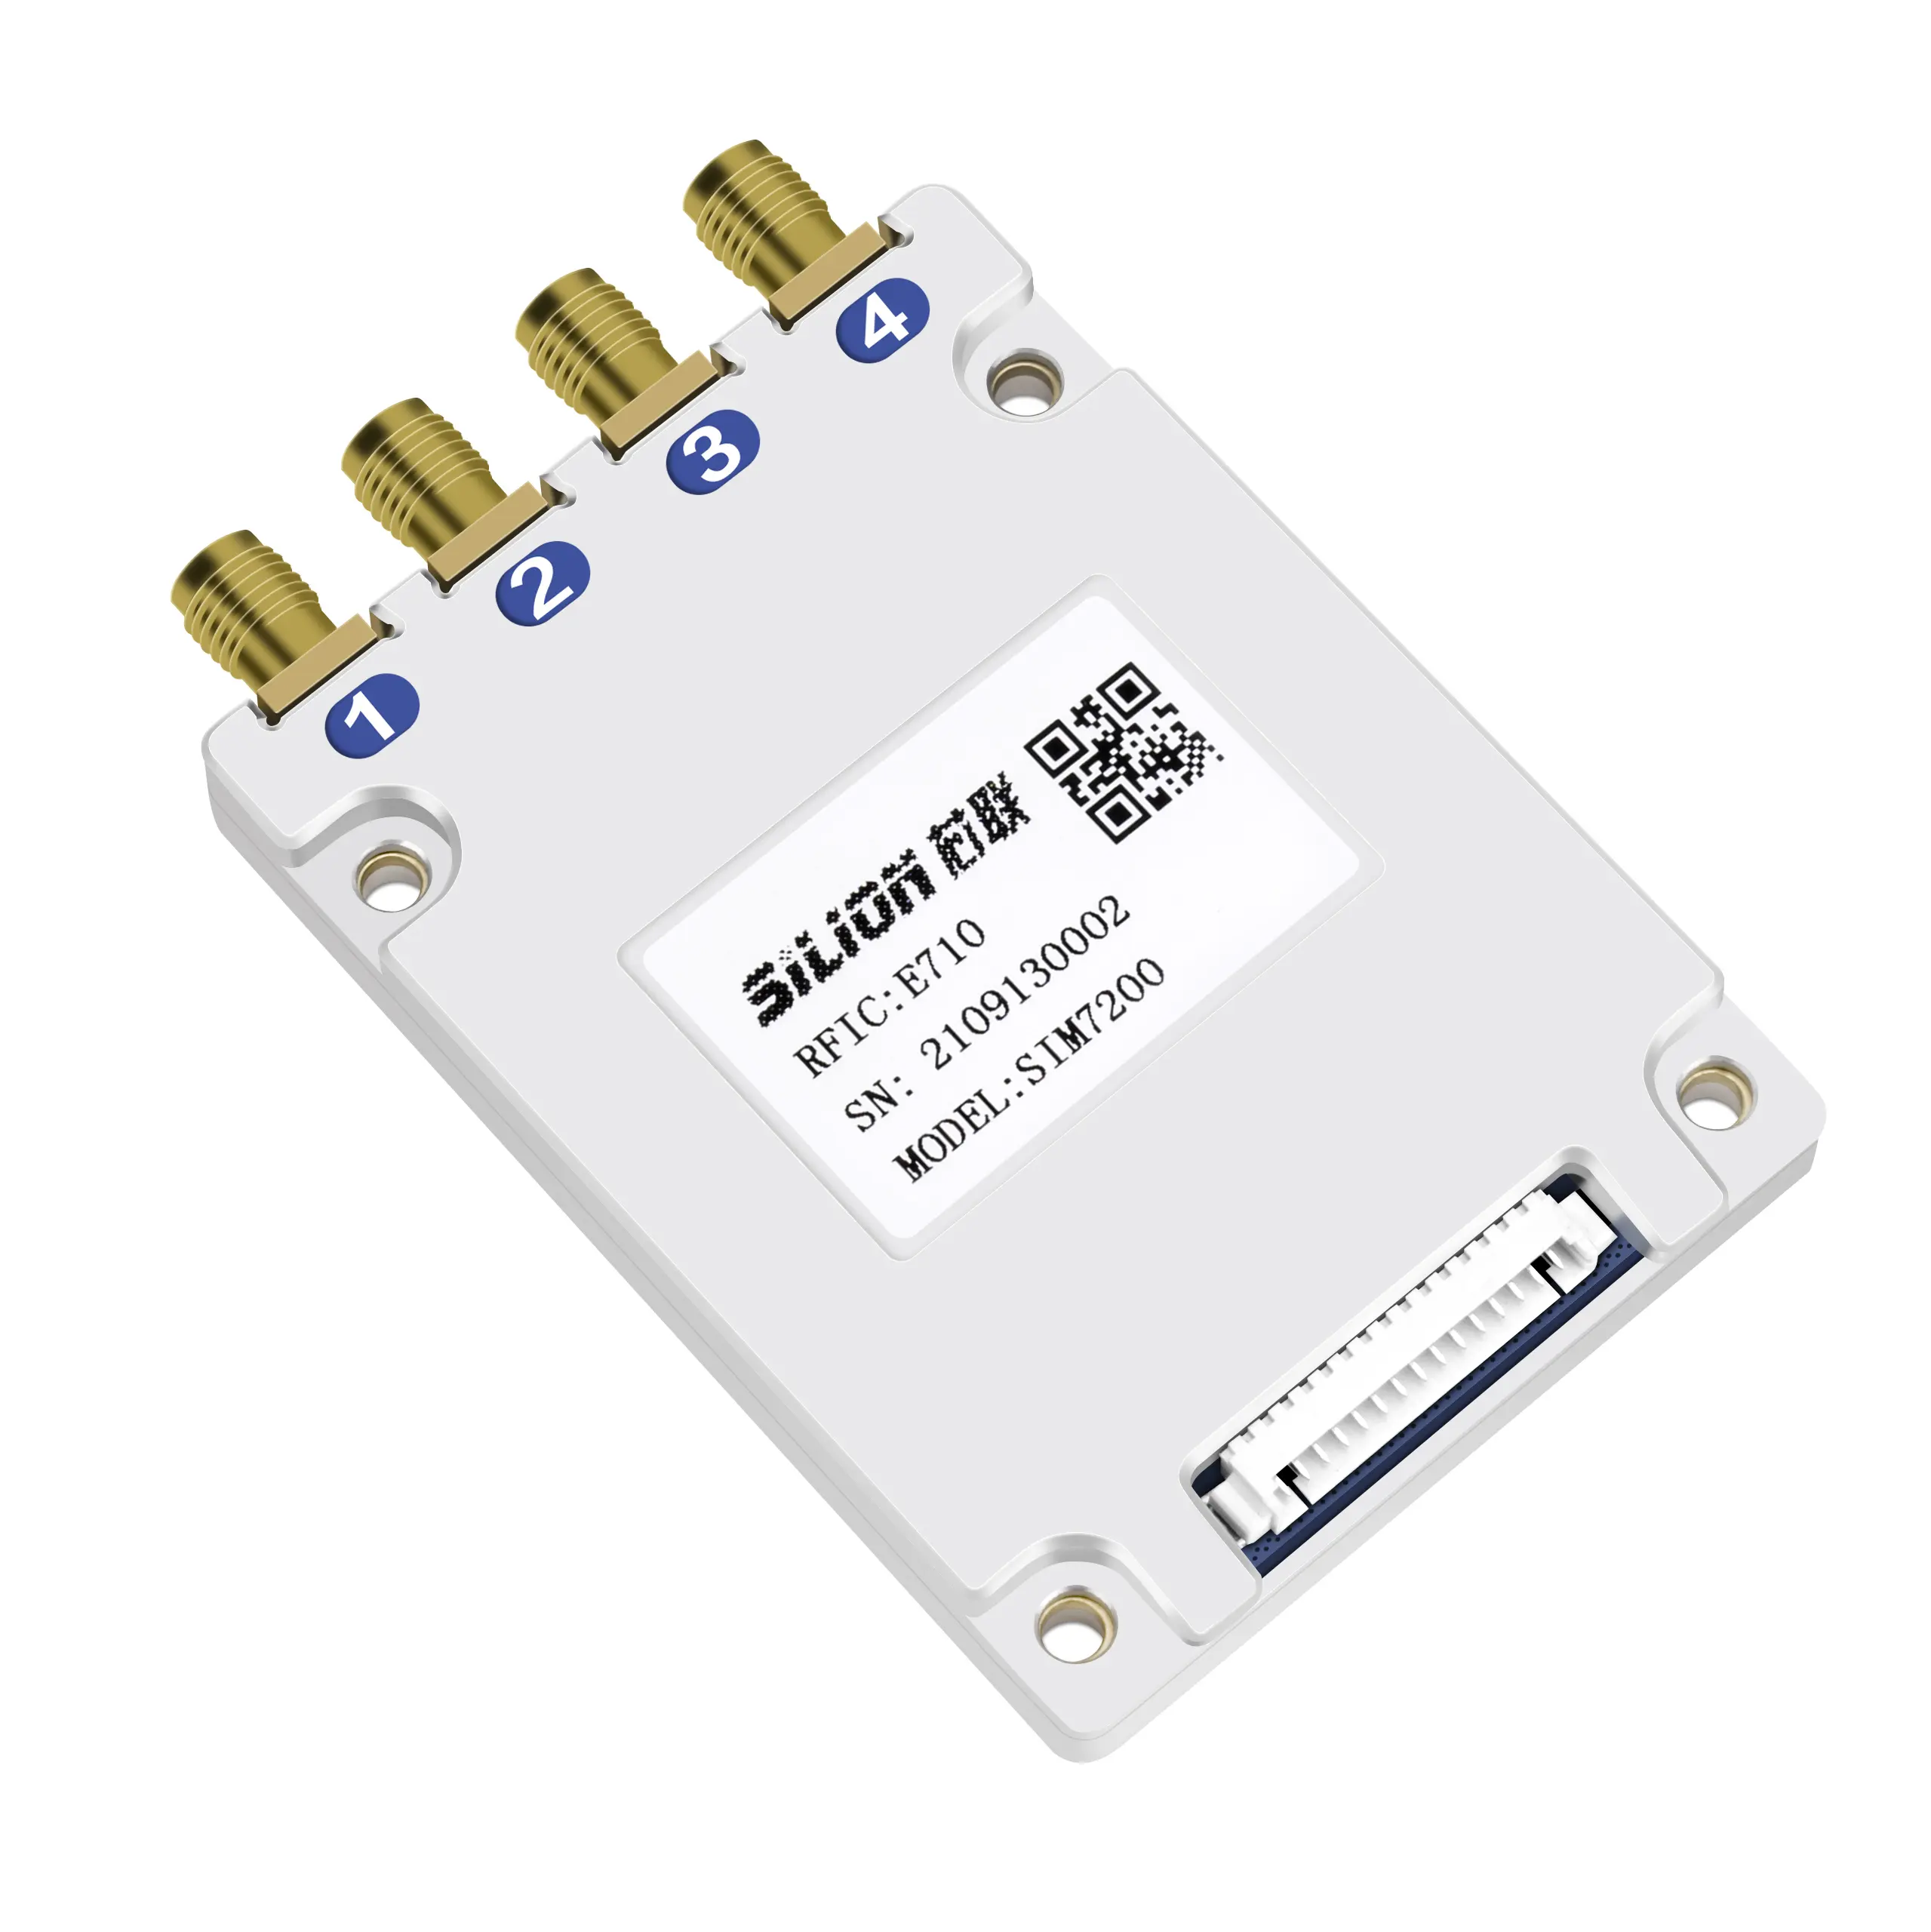 SIM7200 IMPINJ E710 RFID modulo RFID a 4 porte per lettore UHF fisso modulo lettore UHF a lungo raggio 33dBm passivo